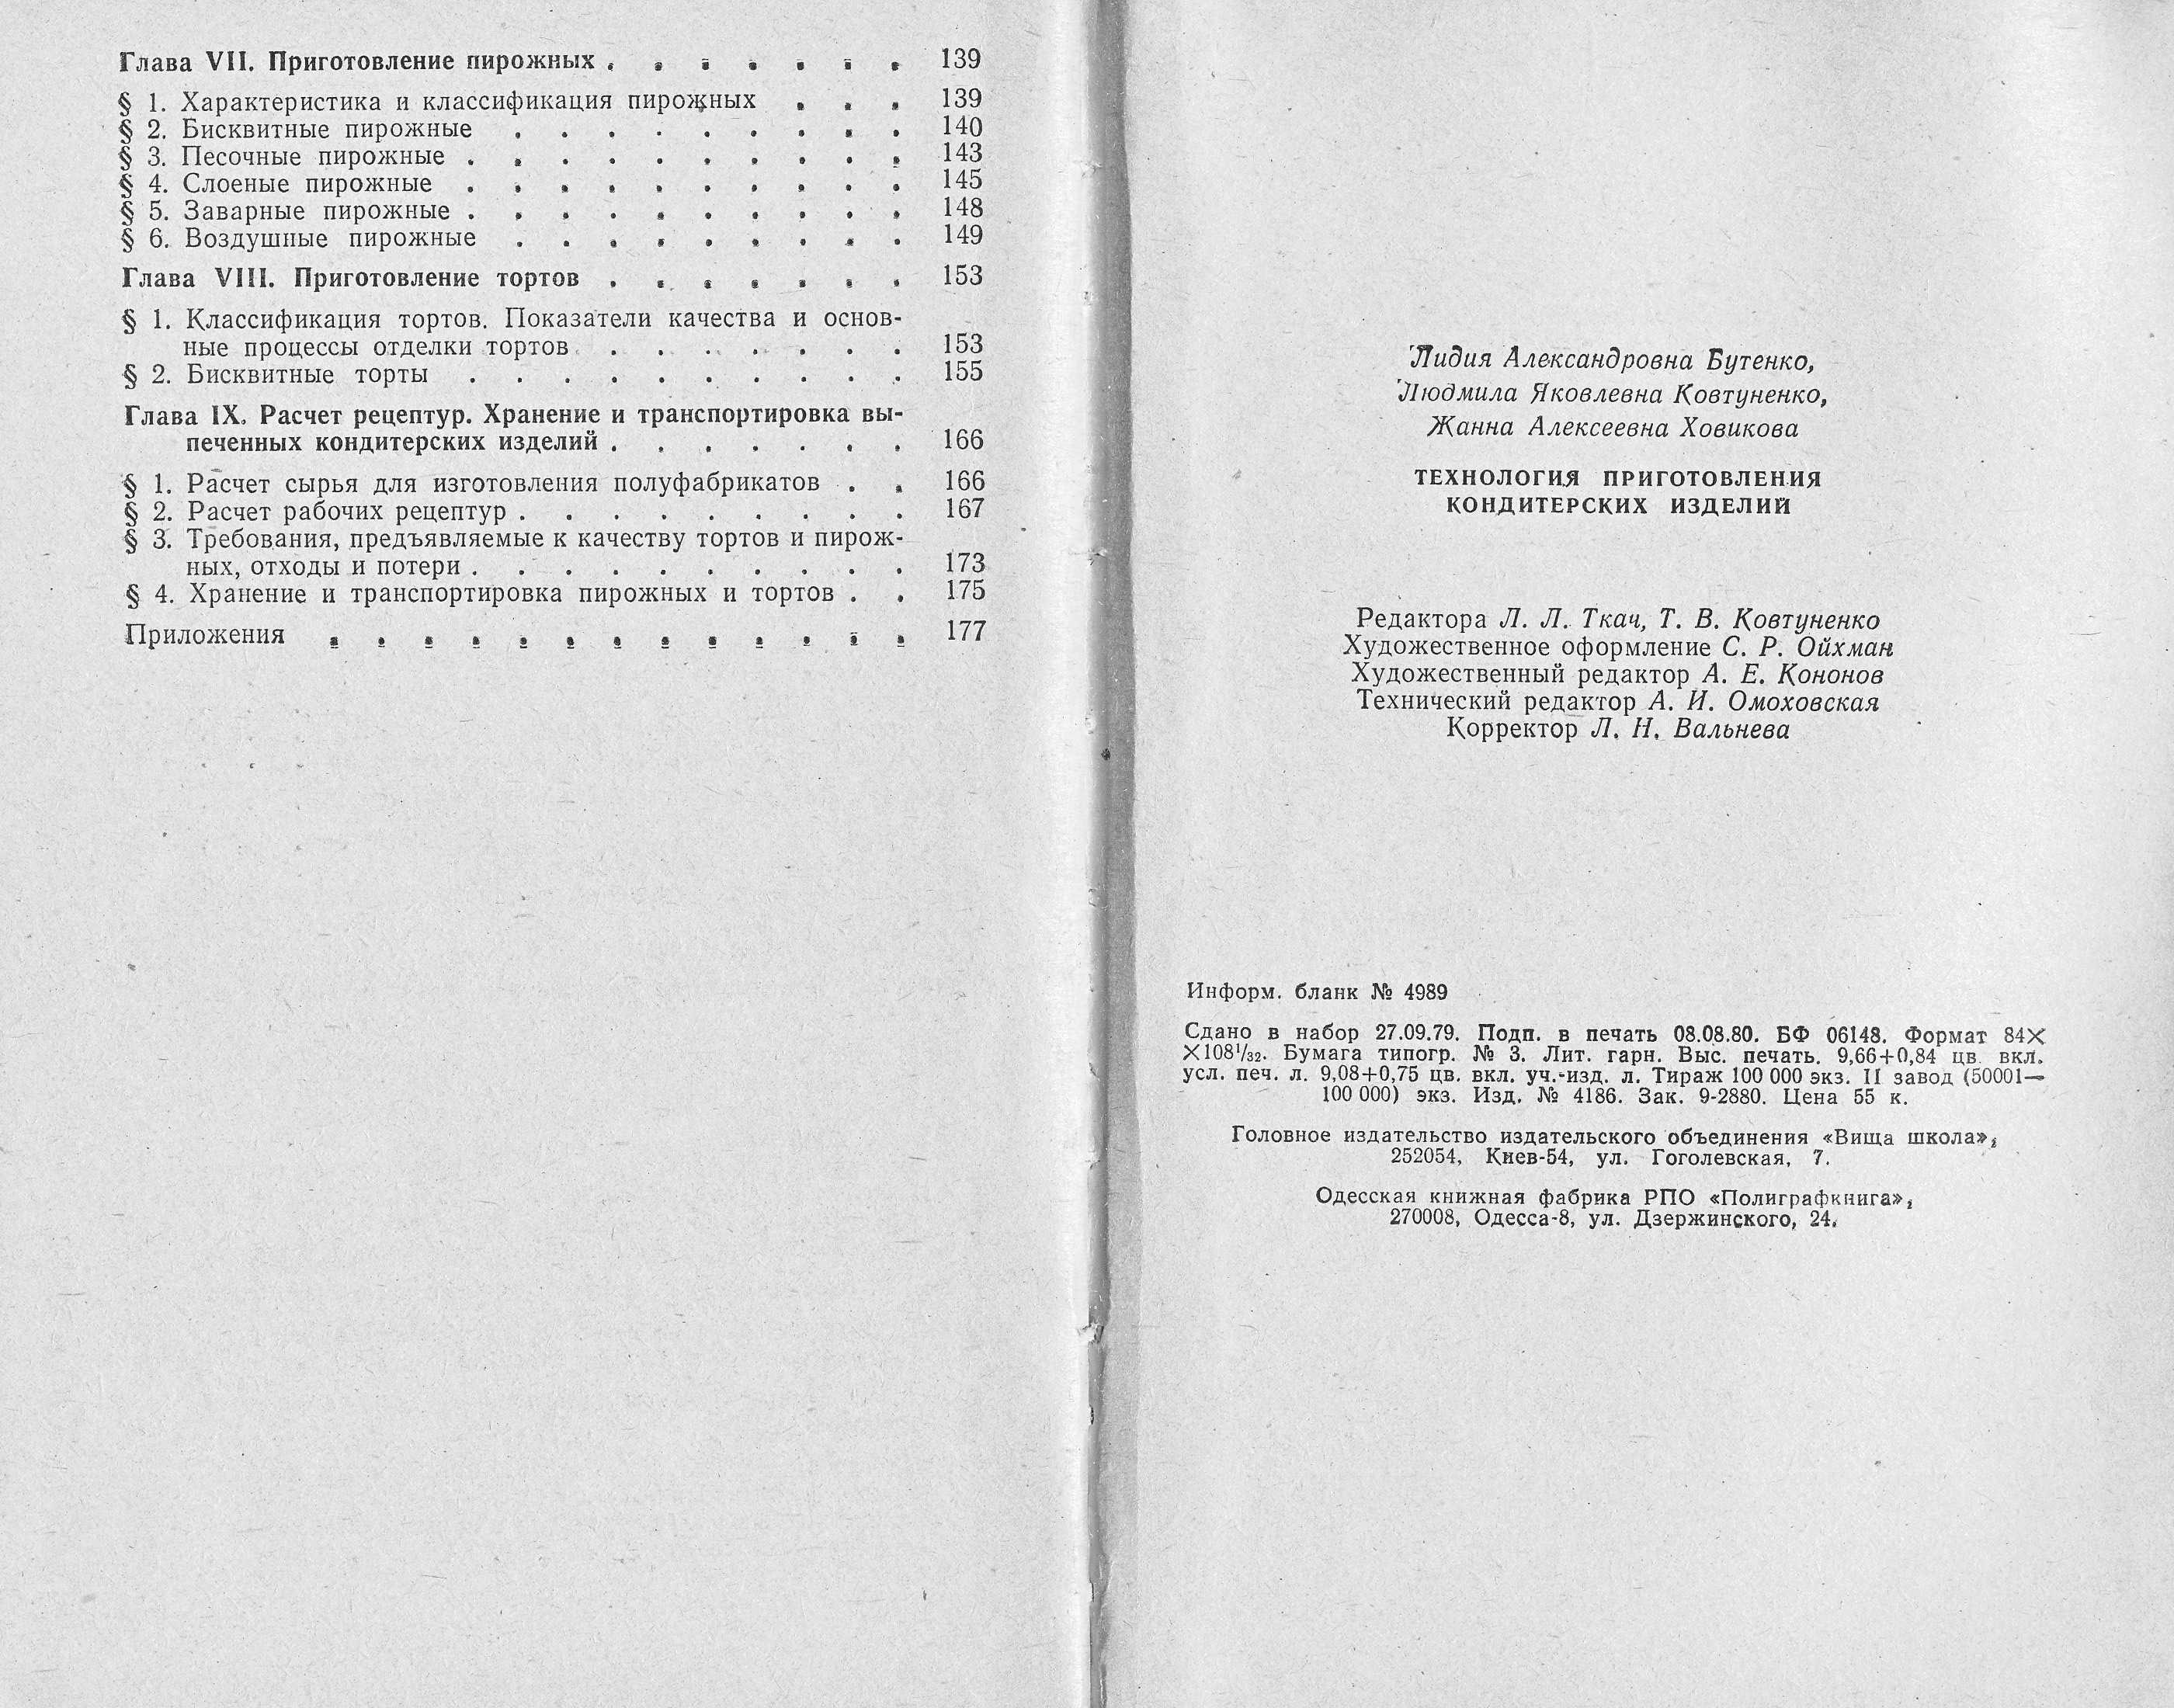 Технология приготовления кондитерских изделий Л.А. Бутенко, Л.Я. Ковтуненко, Ж.А. Ховикова 1980 г. страницы 182‒183